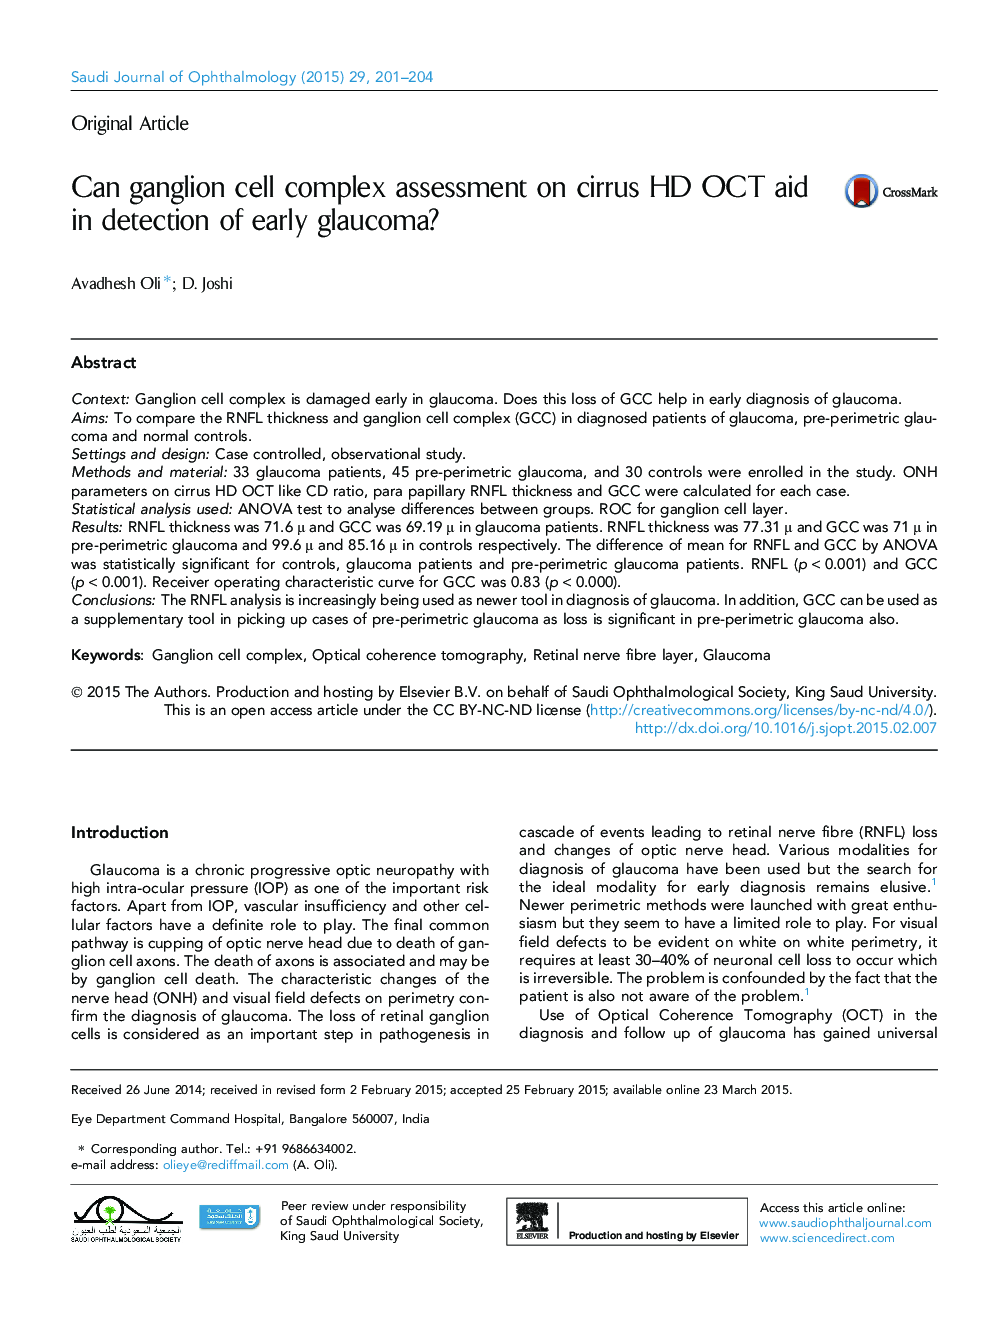 آیا می توانید ارزیابی پیچیده سلول های گانگلیونی را در مورد کمک هورمون HD OCT در تشخیص گلوکوم اولیه مشاهده کنید؟